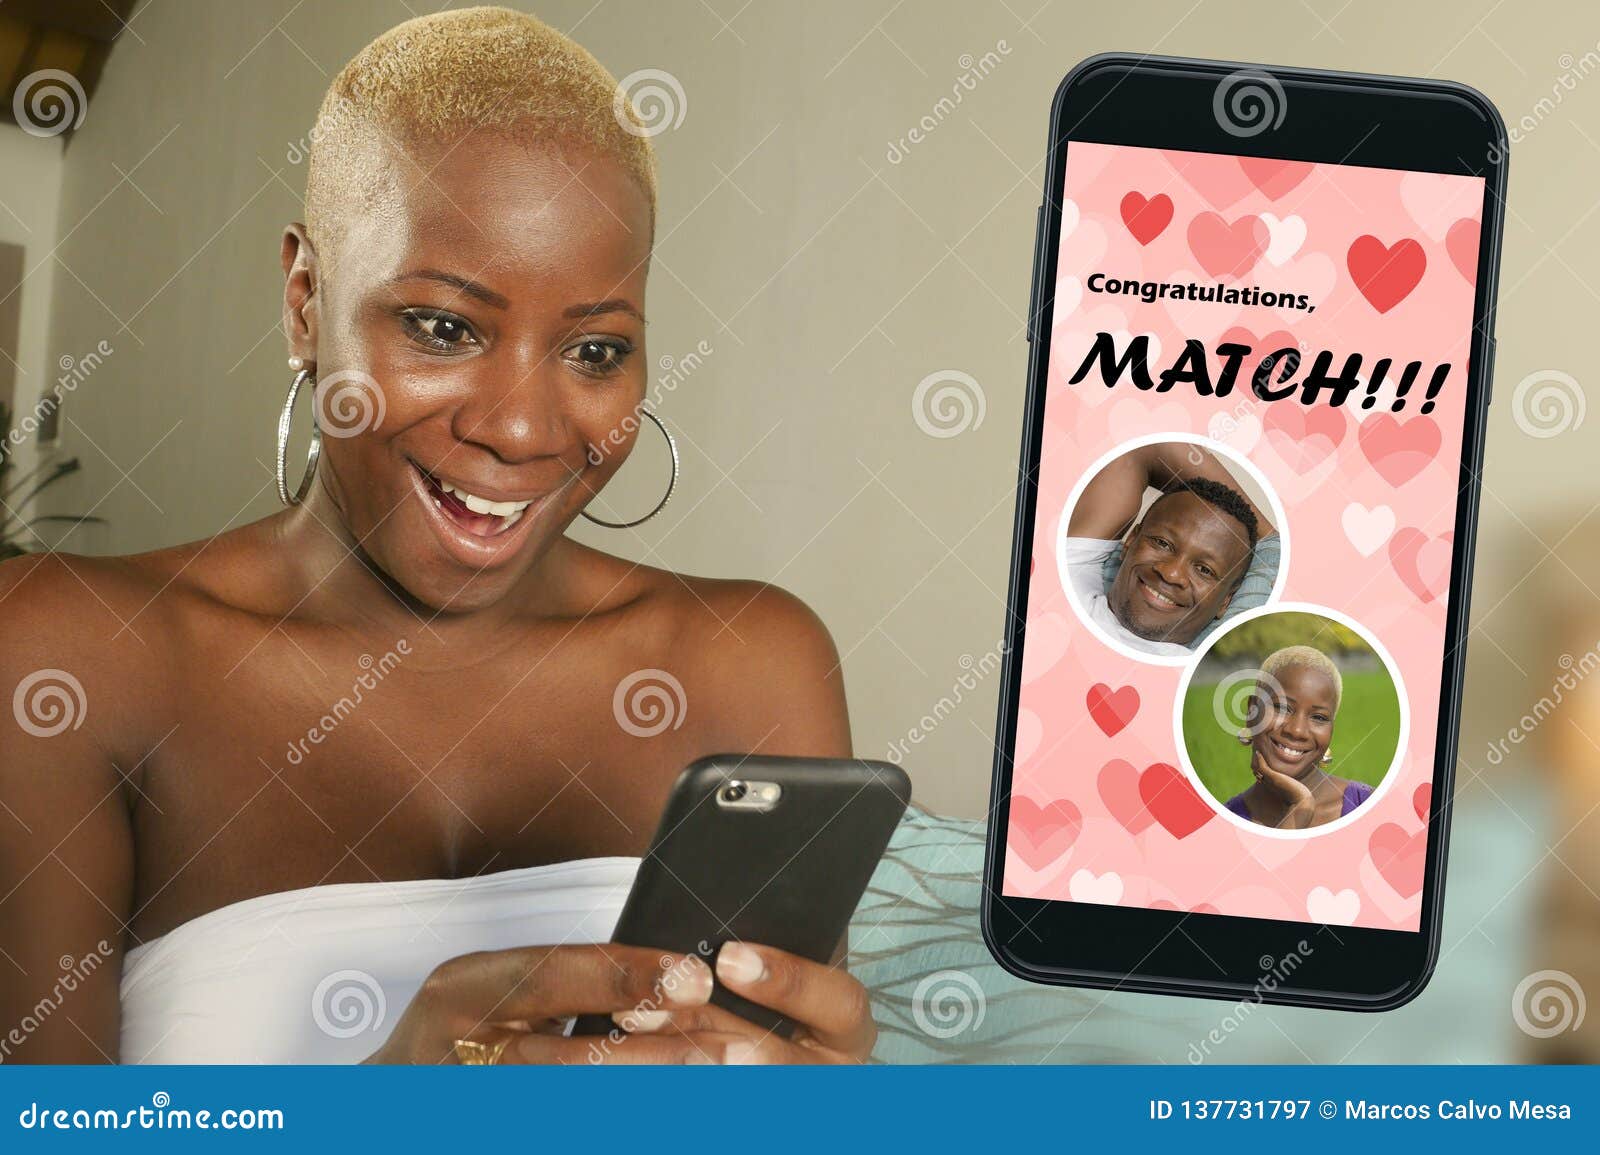 black online dating)